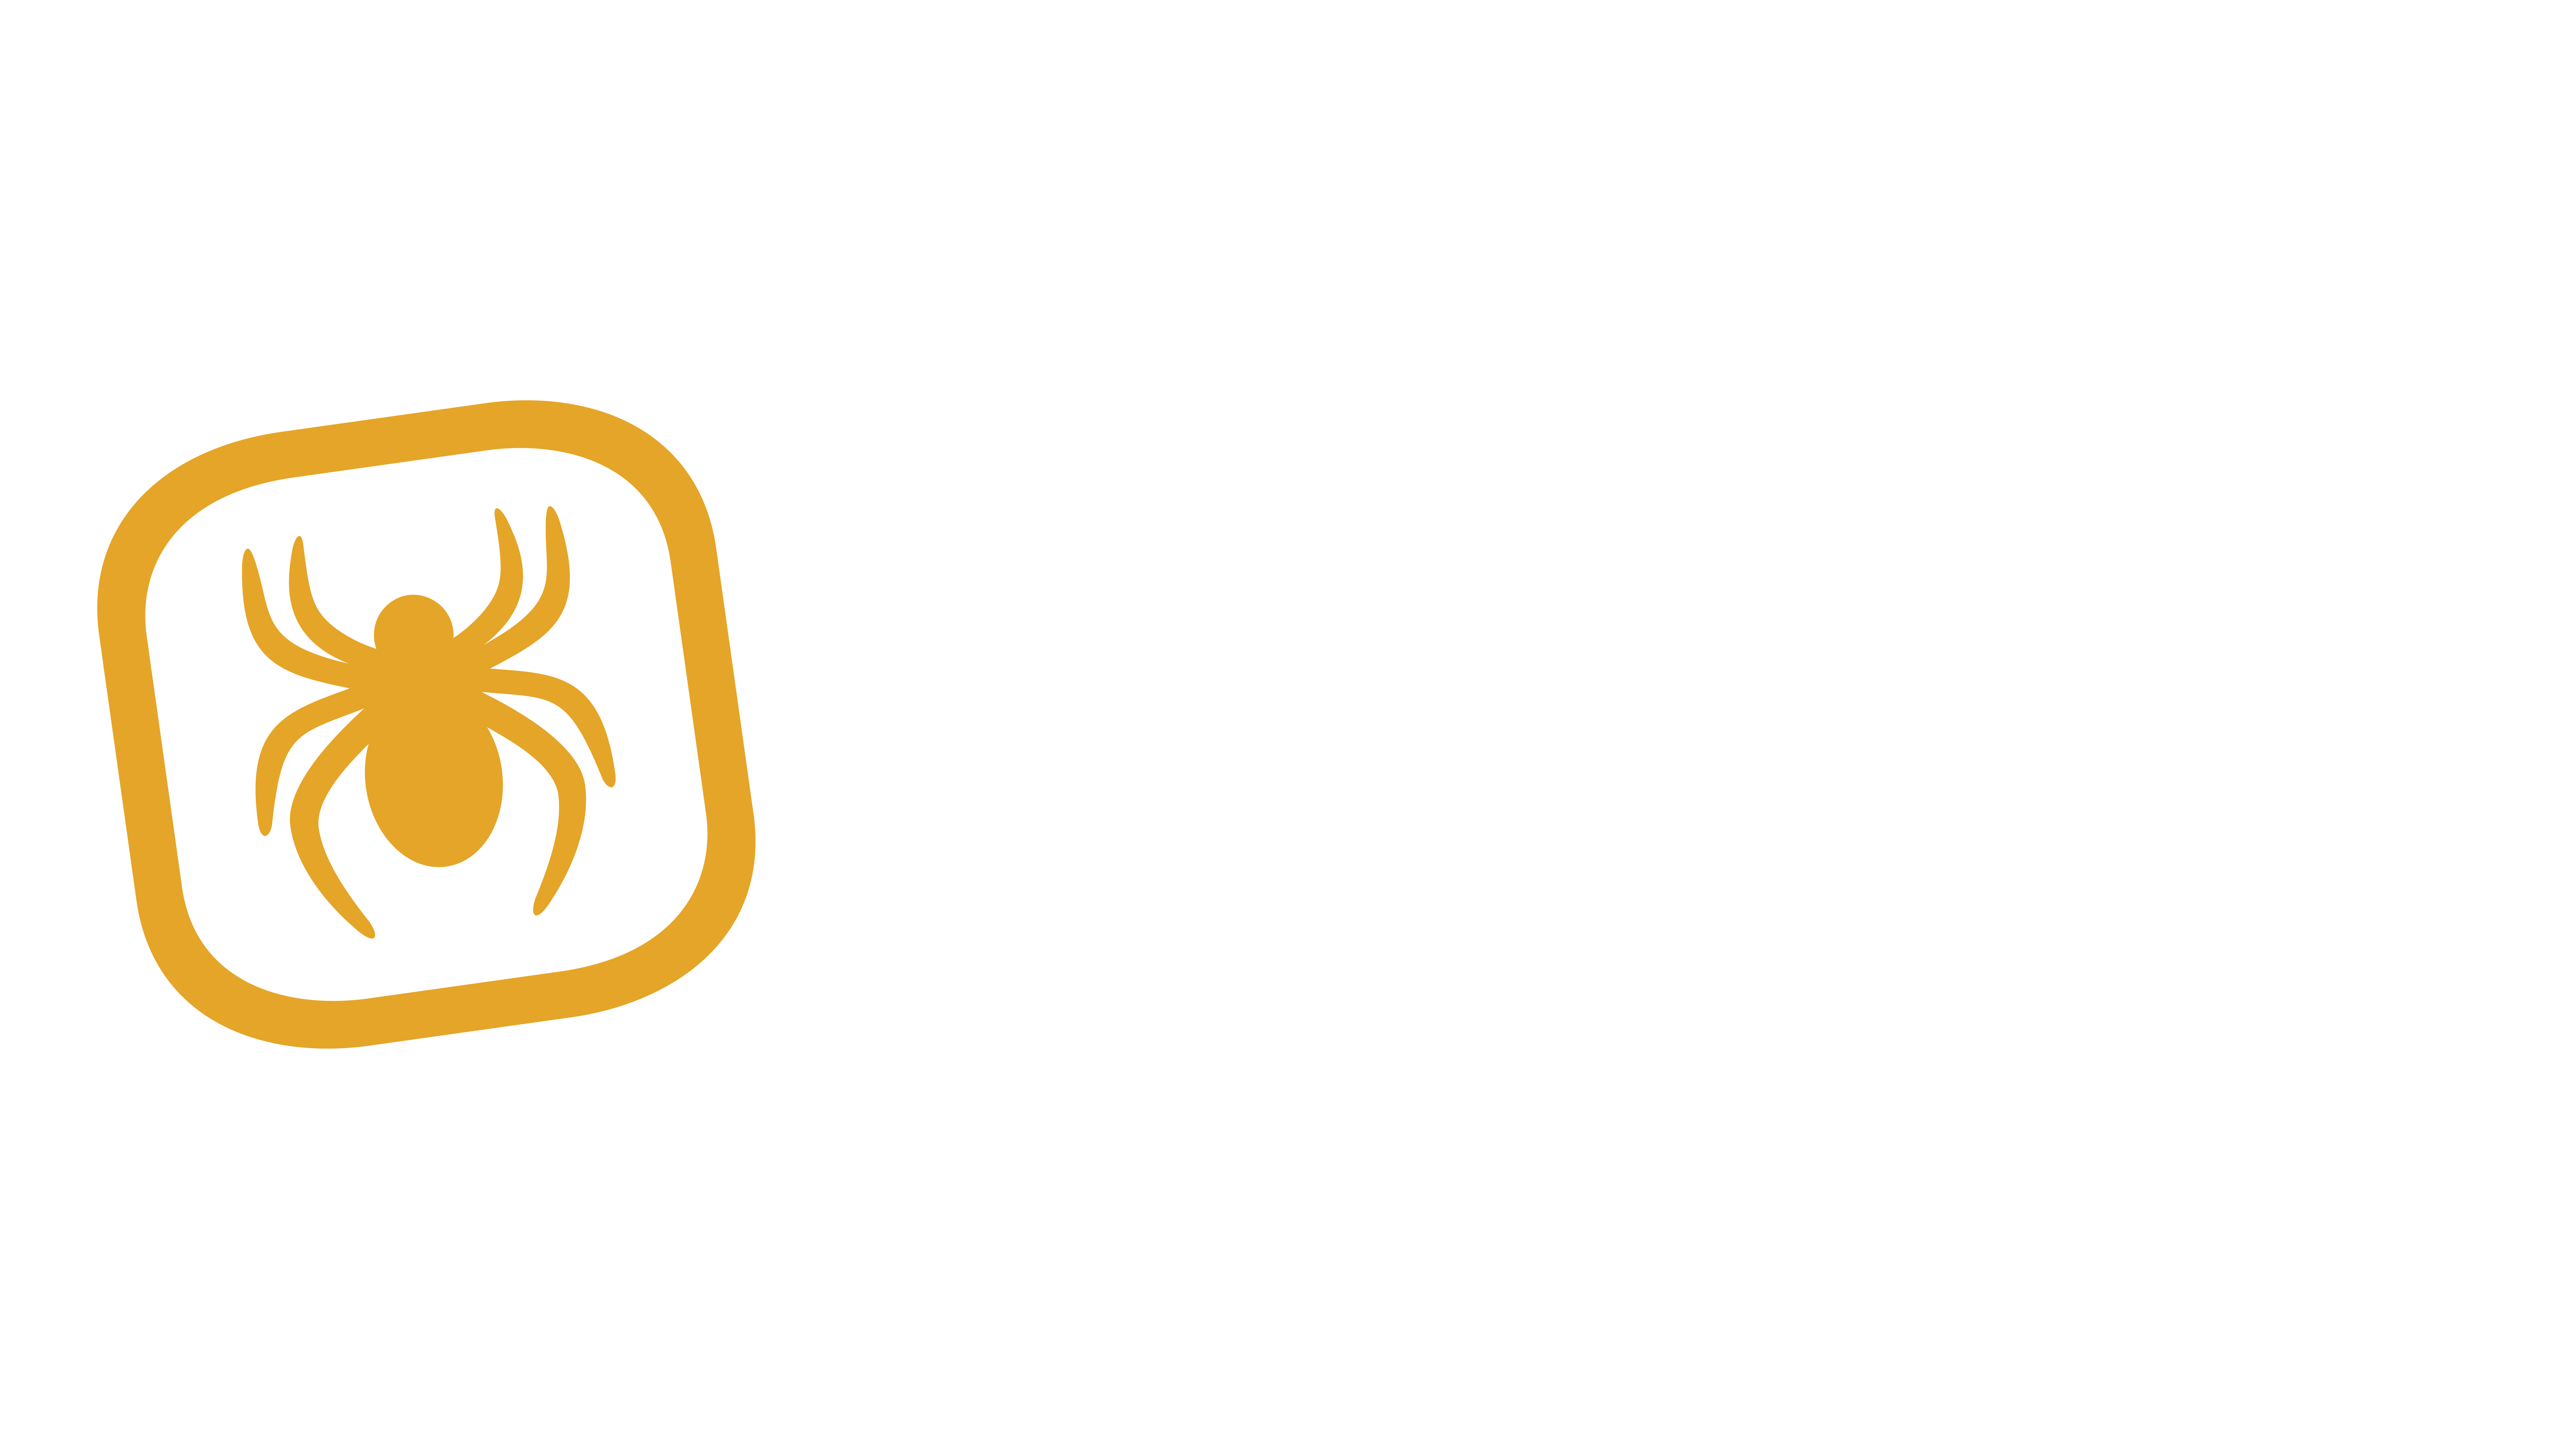 Ron Medellín Añejo